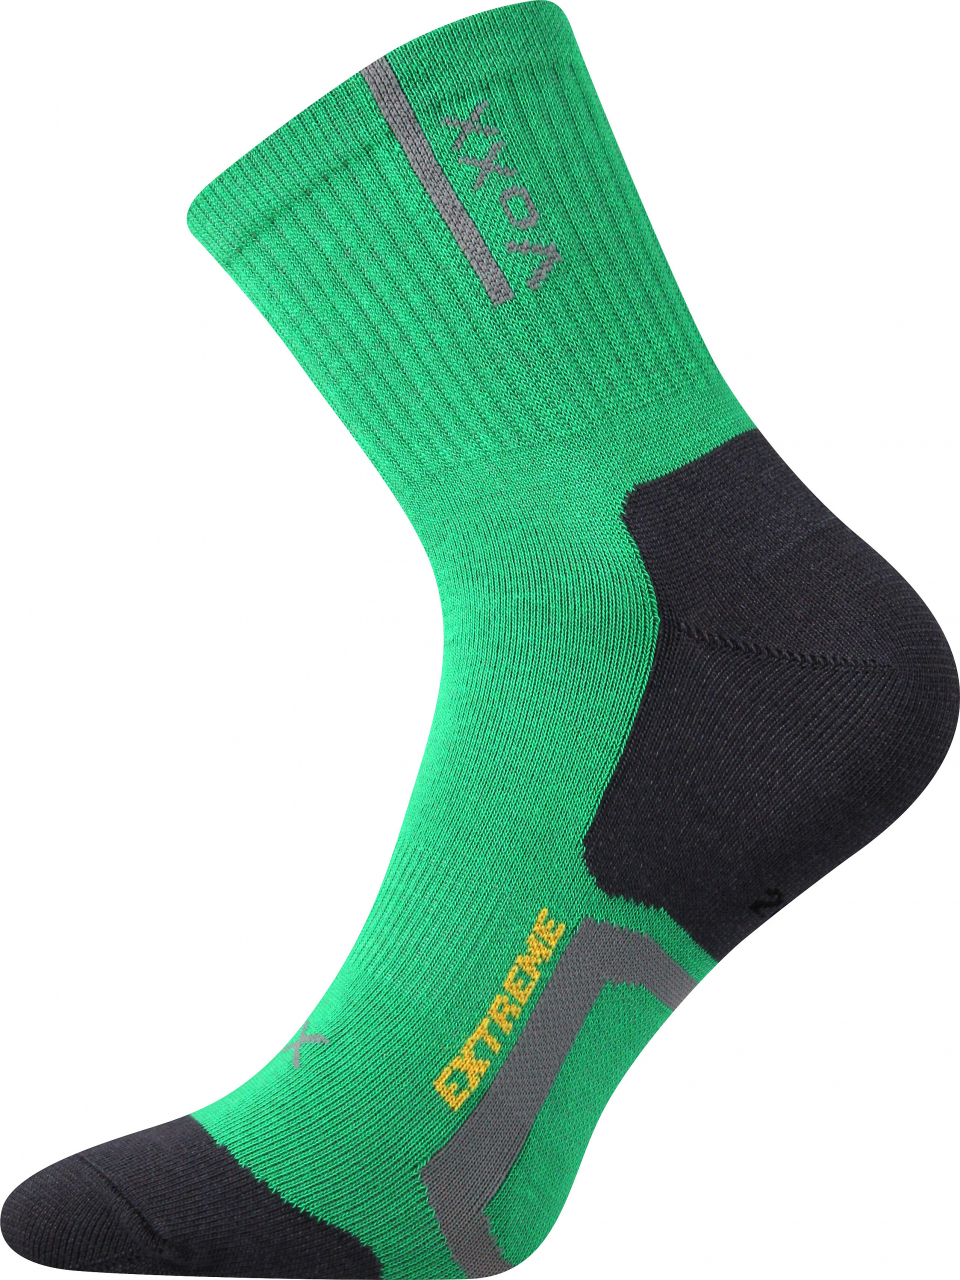 Ponožky antibakteriální Voxx Josef - zelené-černé, 35-38